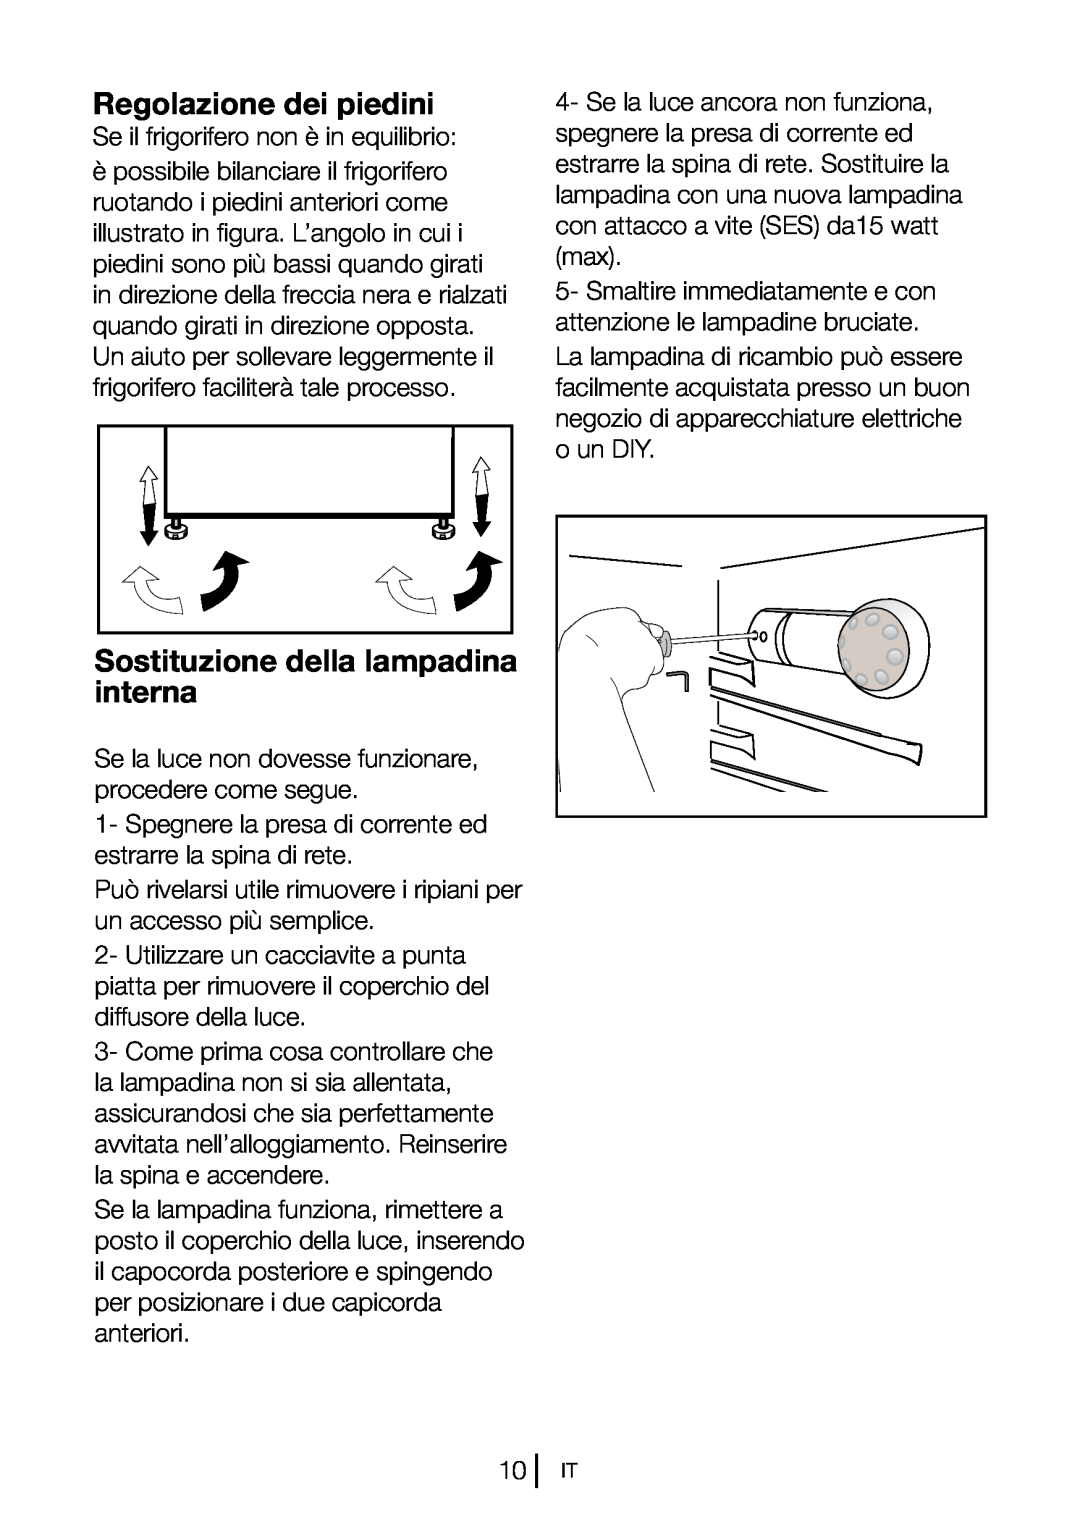 Blomberg DSM 9651 A+ manual Regolazione dei piedini, Sostituzione della lampadina interna 